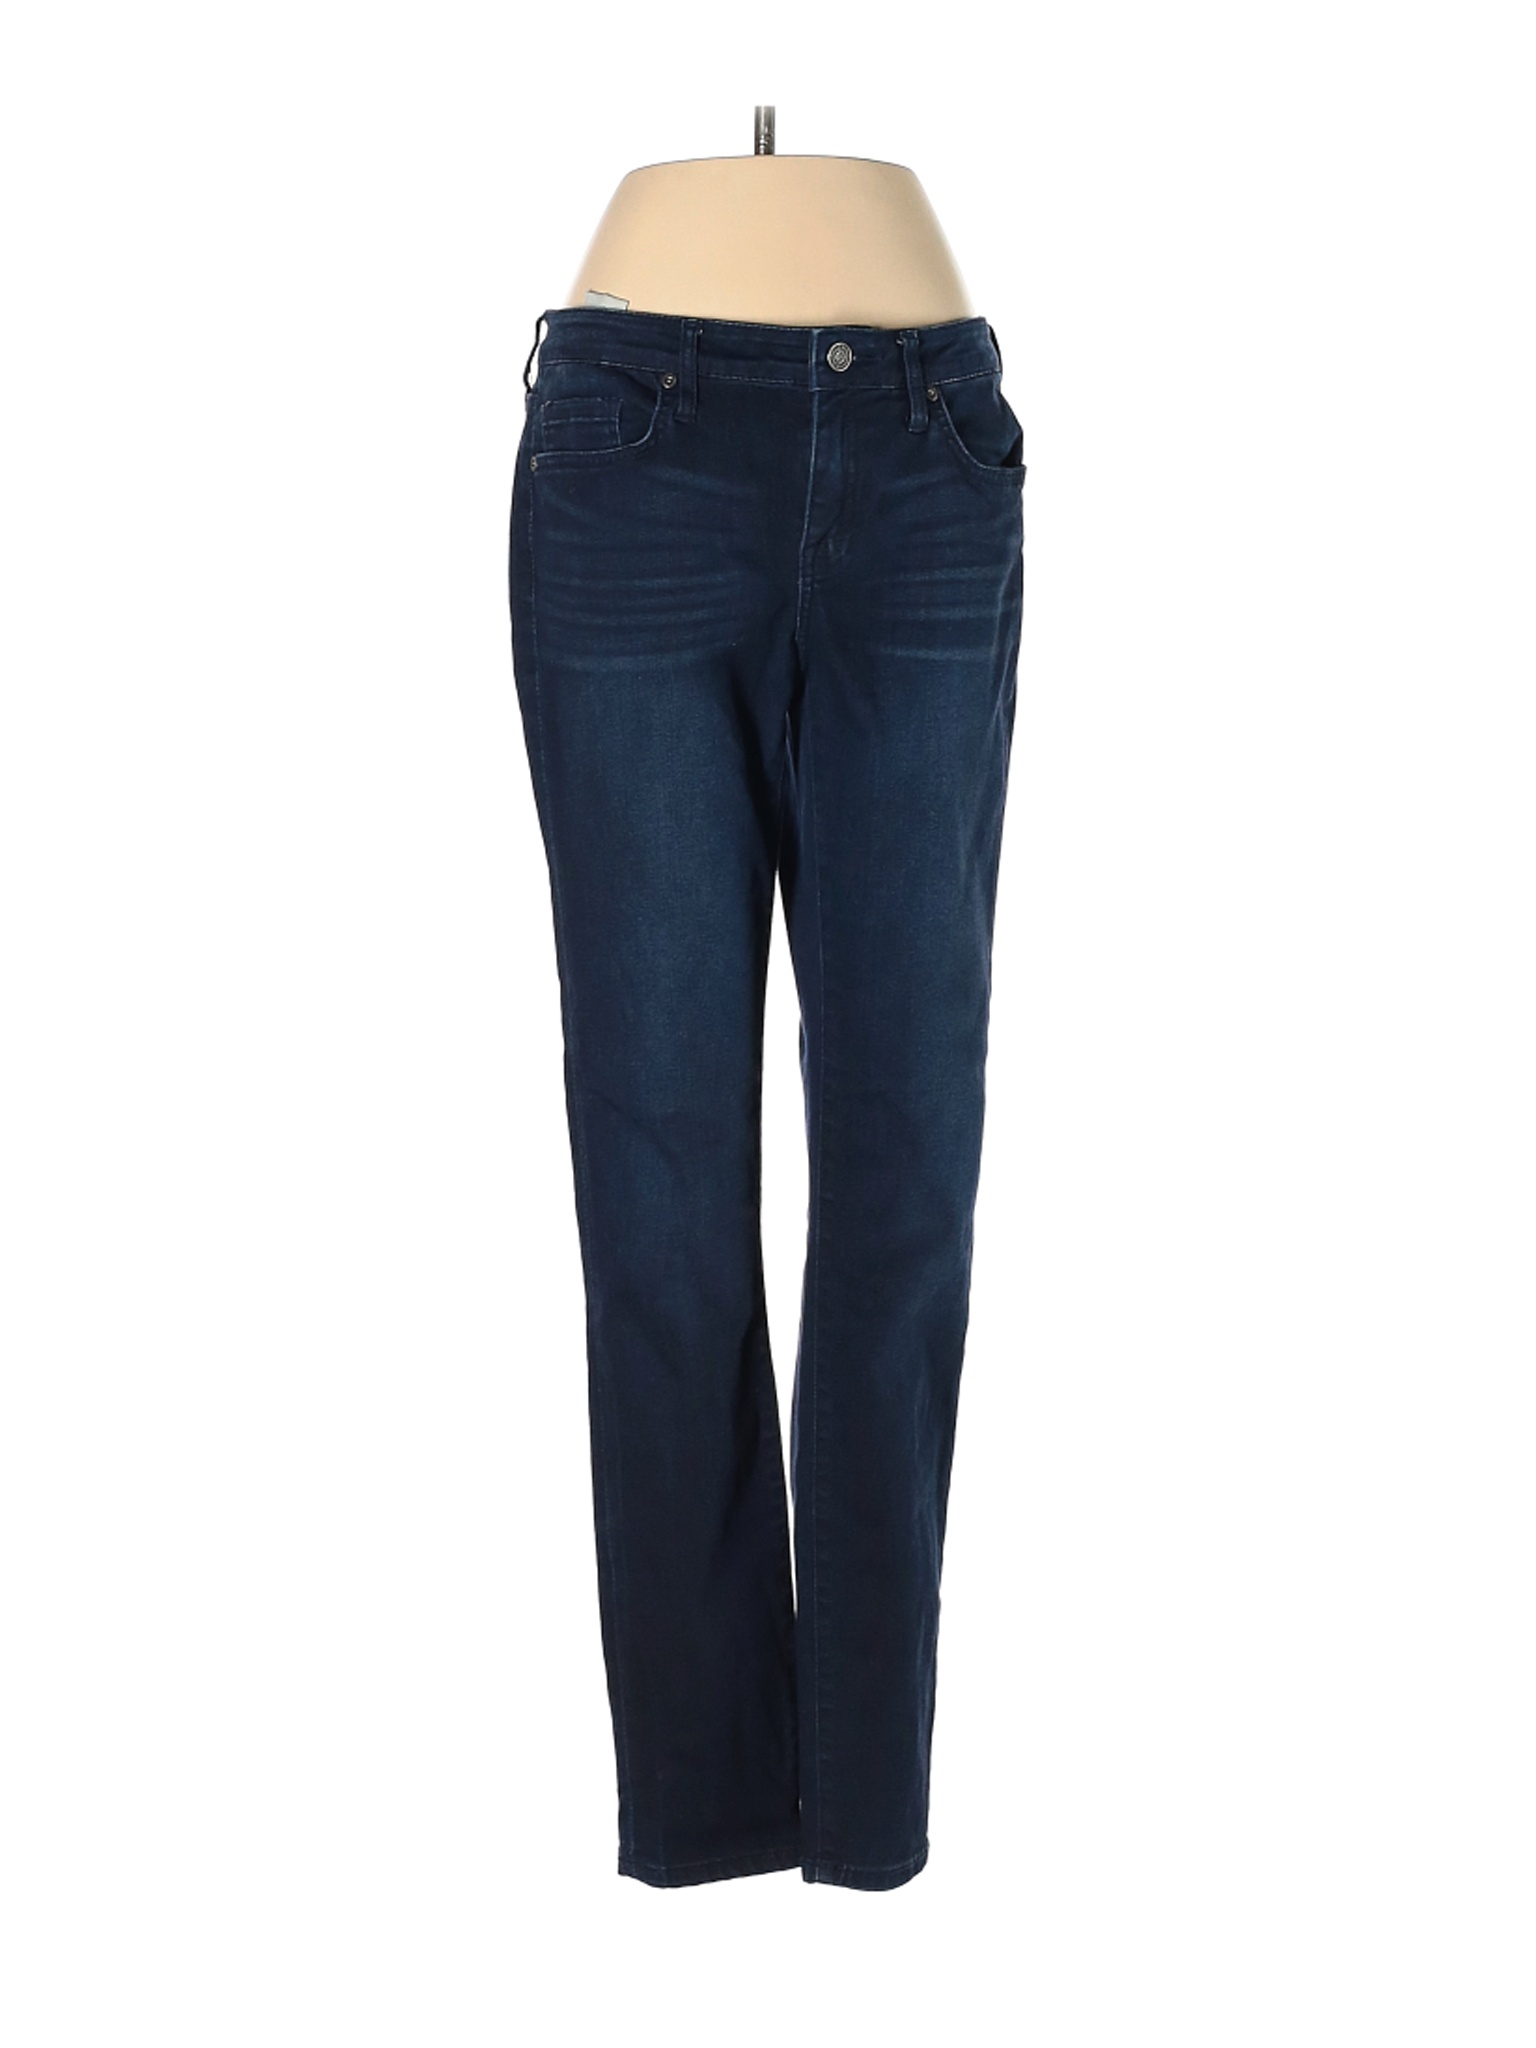 Joie Women Blue Jeans 27W | eBay